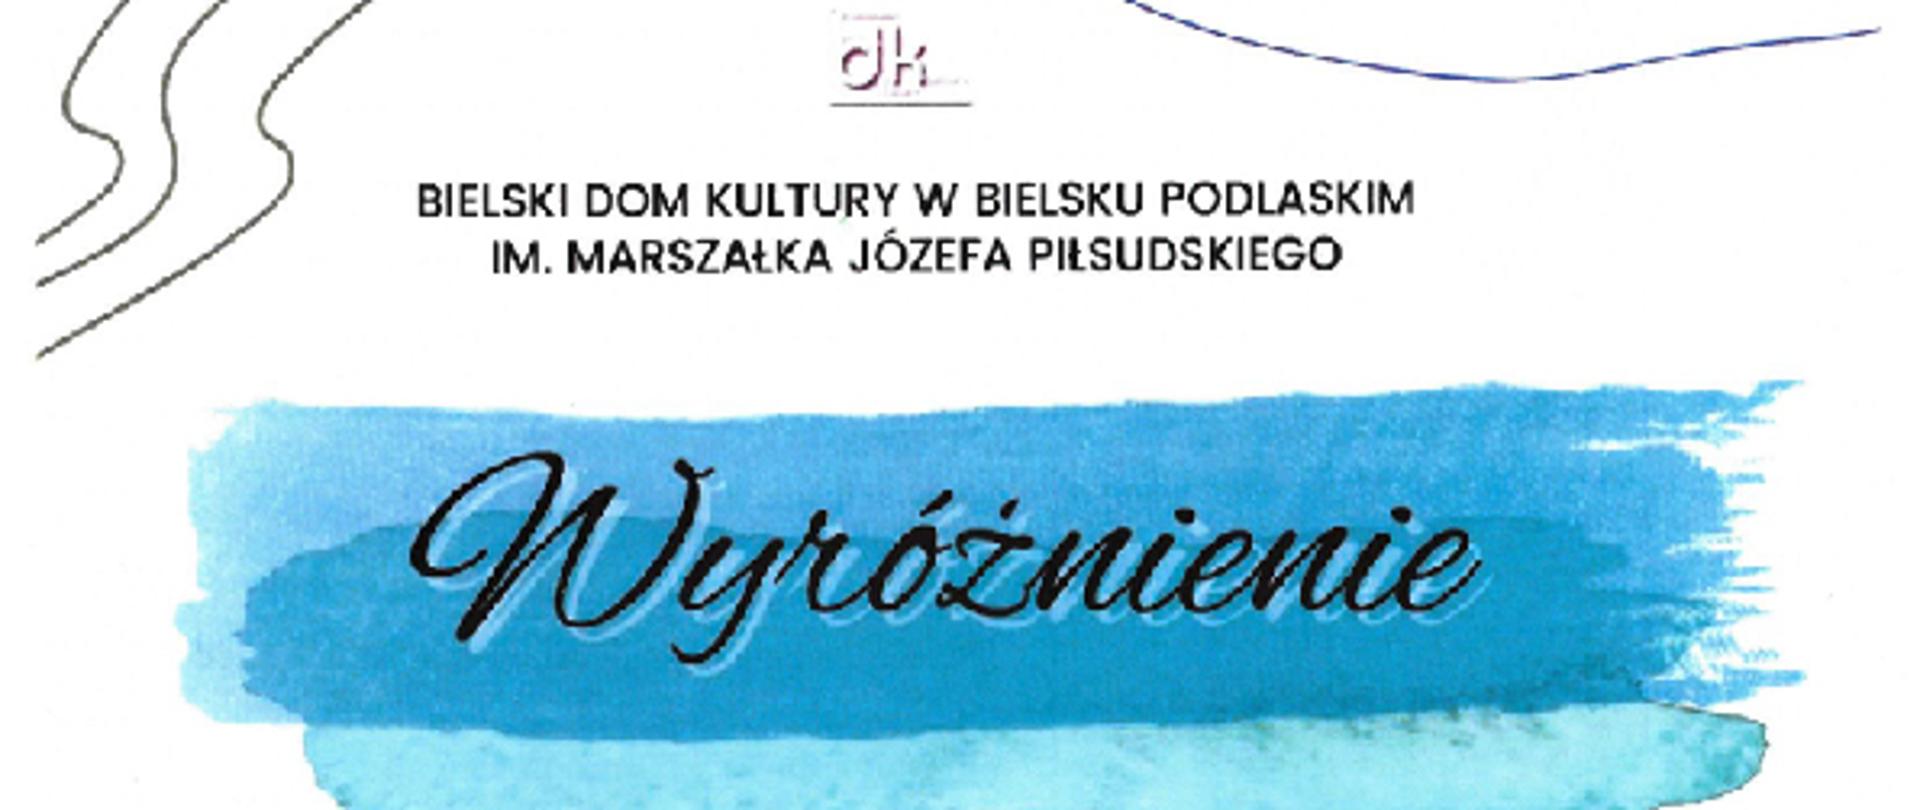 Na niebieskim tle widnieje napis : Wyróżnienie.
Poniżej umieszczono tekst: Monika Hernik
IX Międzynarodowe Biennale Twórczości Plastycznej Młodych, o Złotą, Srebrną i Brązowa Paletę, statuetkę Burmistrza Miasta Bielsk Podlaski
" Pasje i Talenty 2022"
w lewym dolnym rogu jest umieszczone Jury składające się z trzech osób oraz Komisarz Biennale, a w prawym pieczęć Dyrektora Bielskiego Domu Kultury Elżbiety Fionik.
Na dole umieszczono motyw roślinny oraz napis: Bielsk Podlaski 2022 r.
